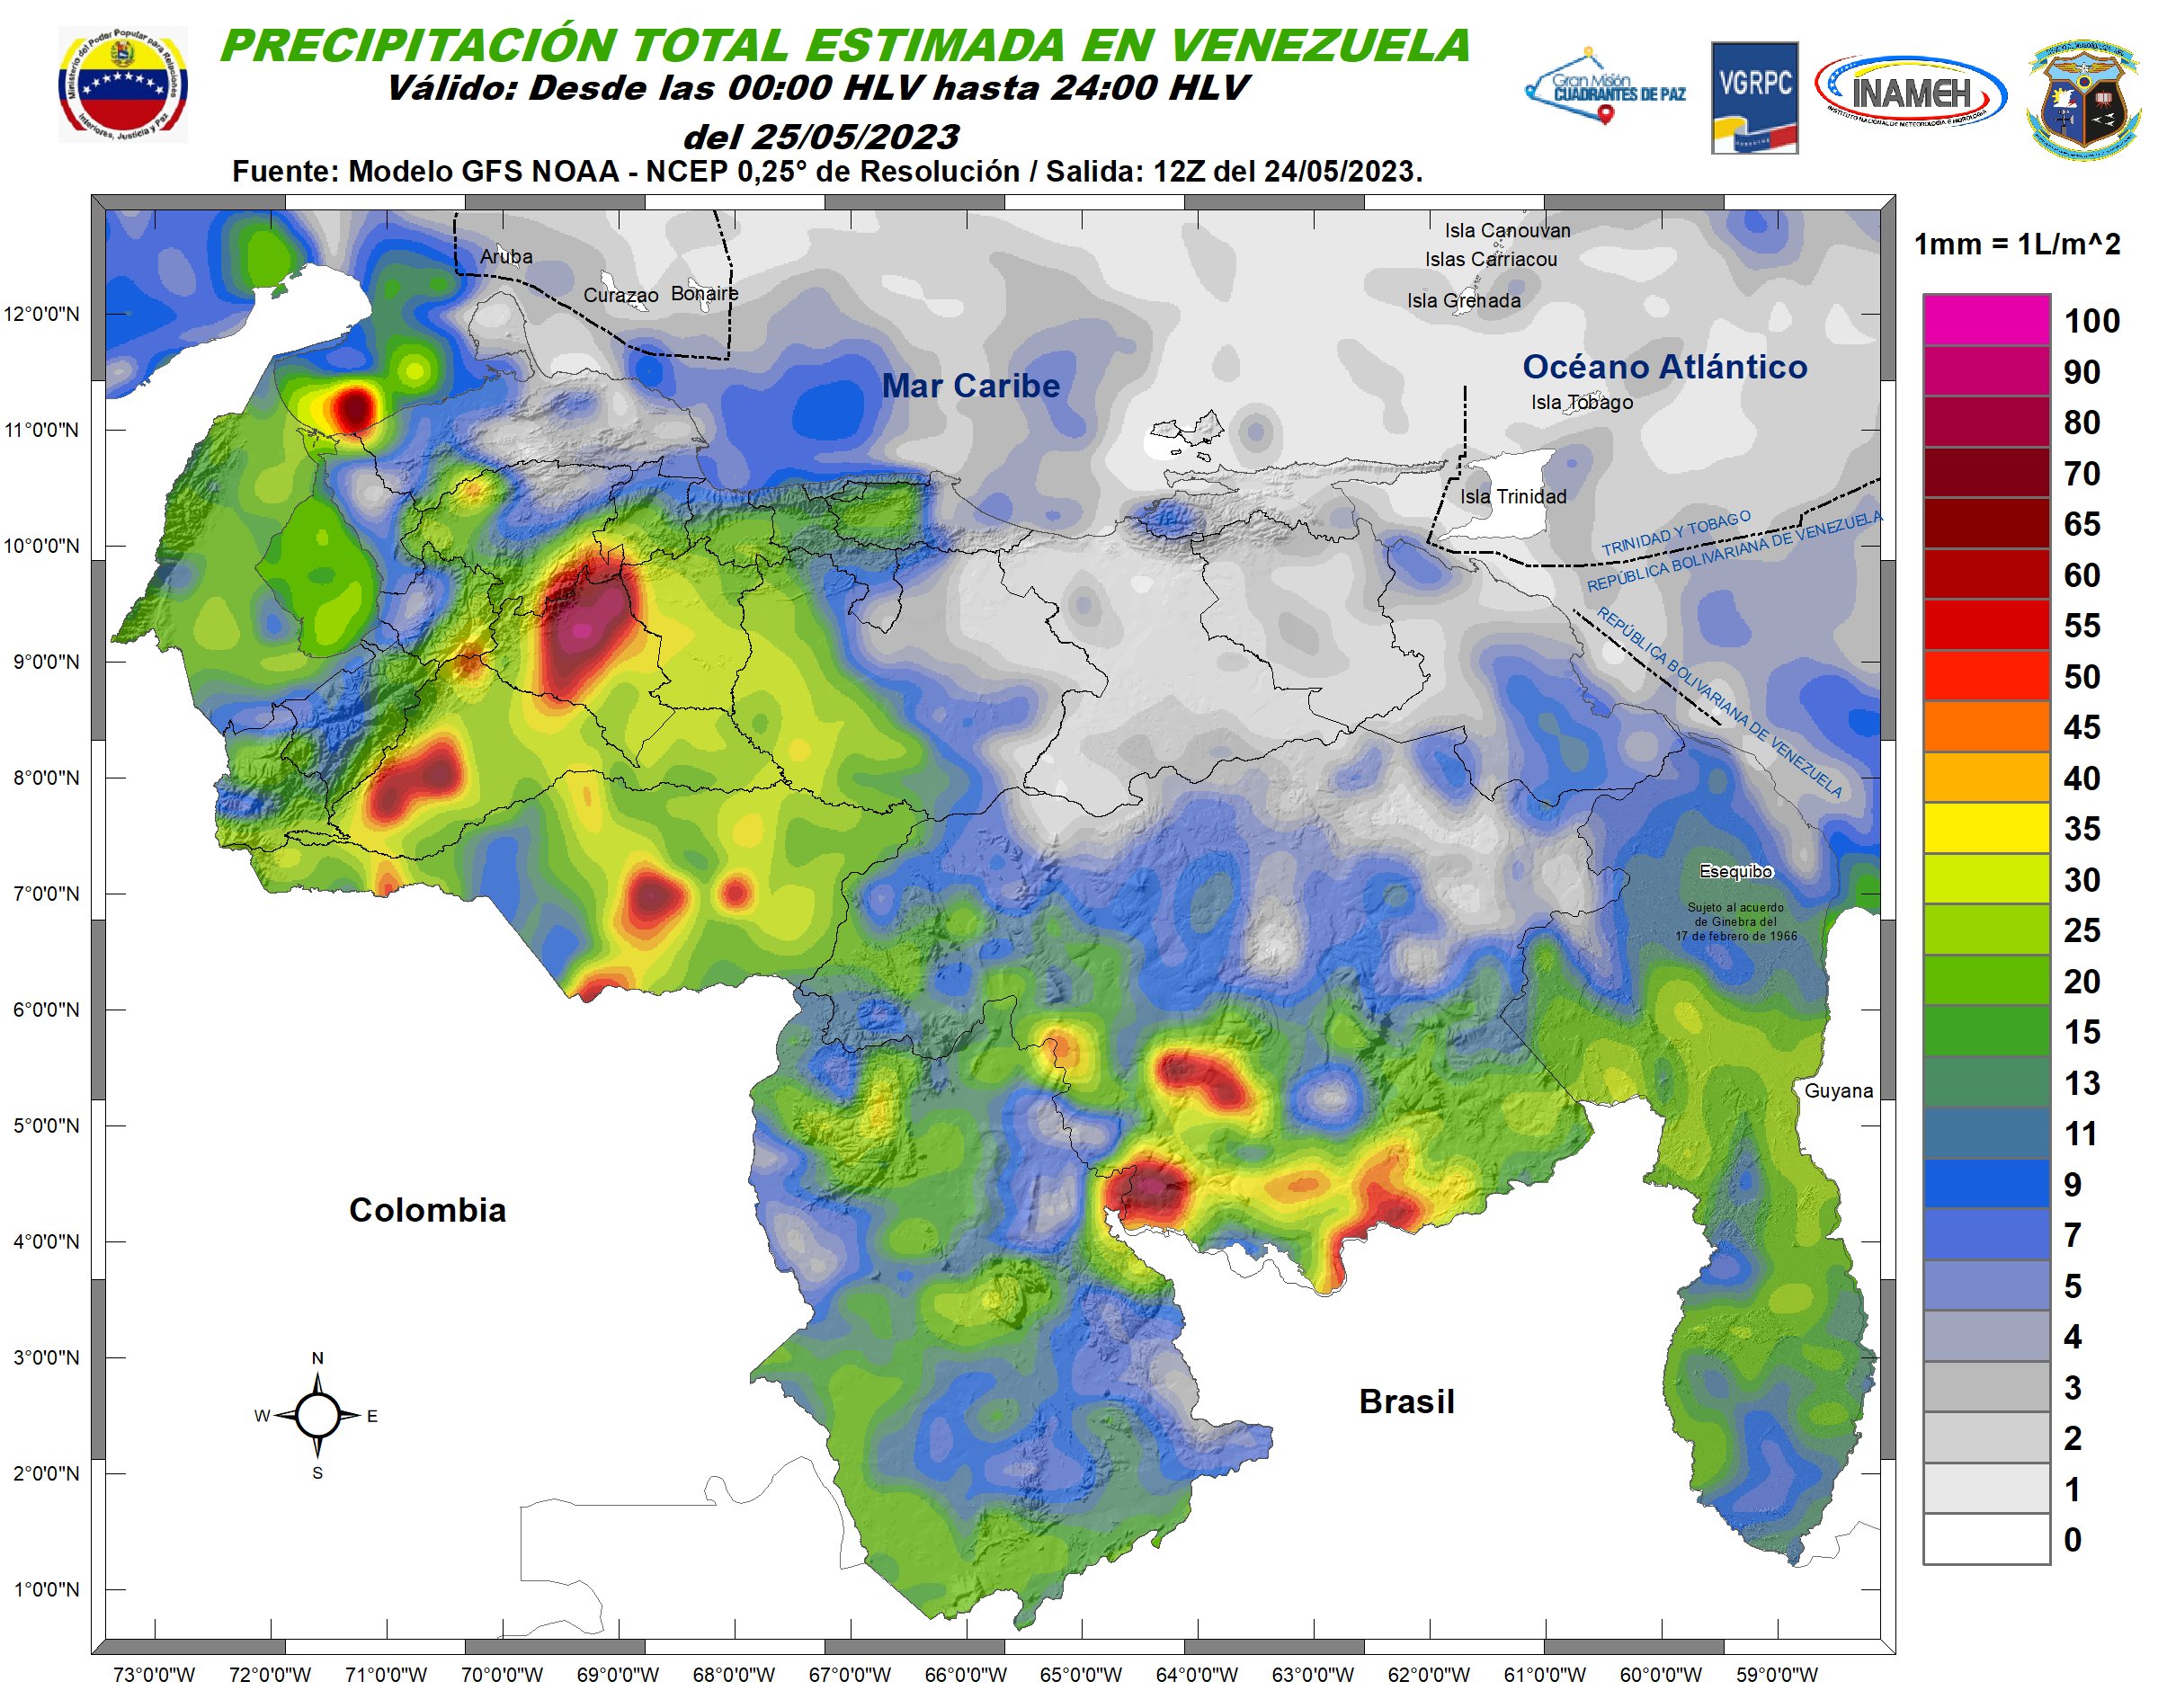 Inameh prevé nubosidad y lluvias en algunas áreas de Venezuela este #25May